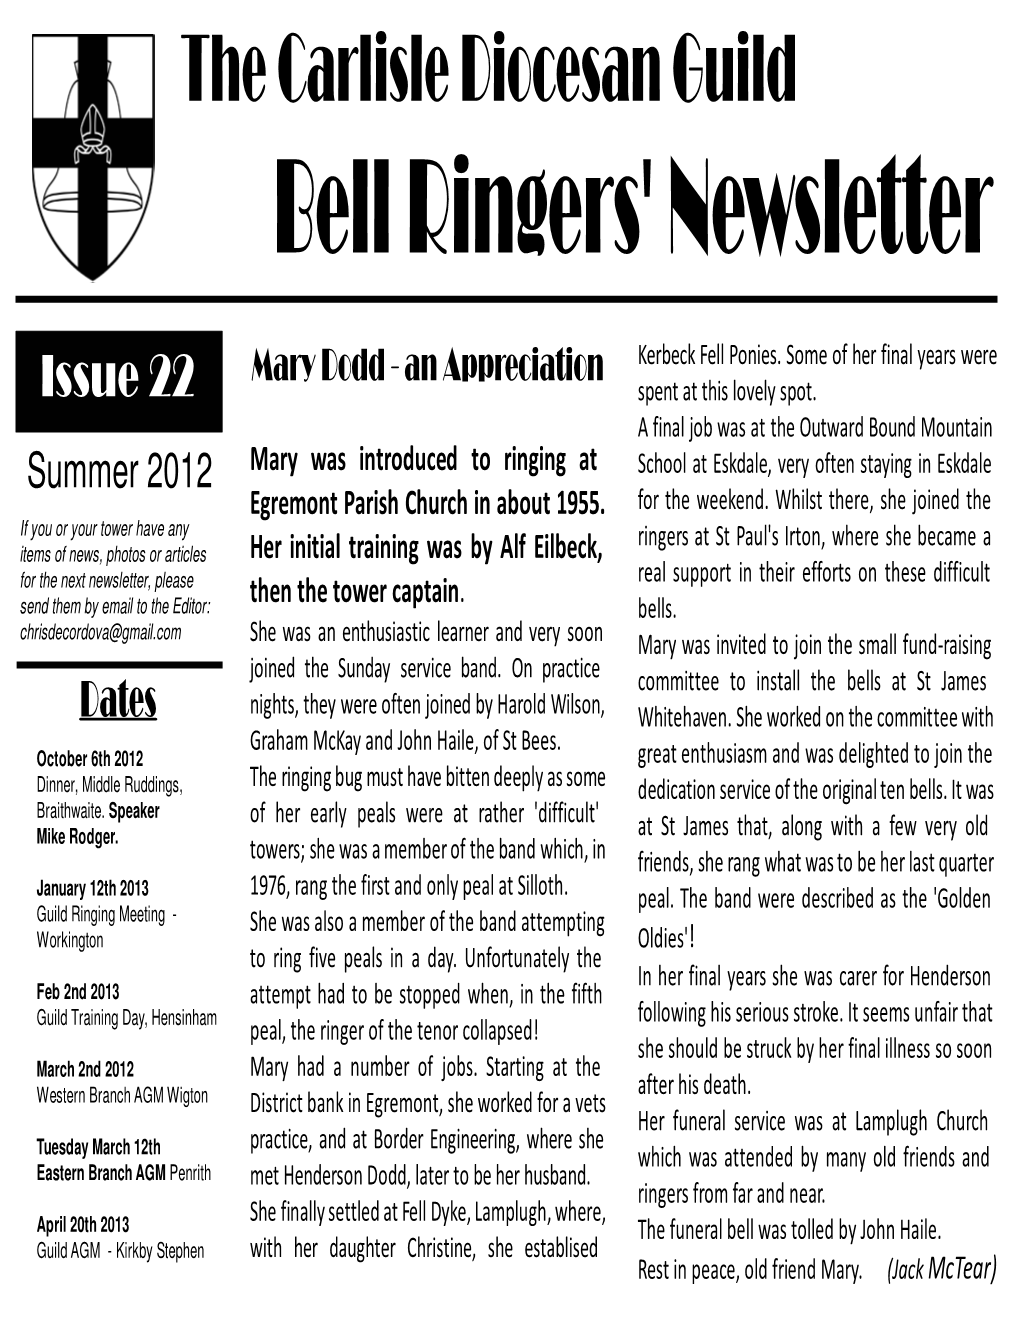 Bell Ringers' Newsletter